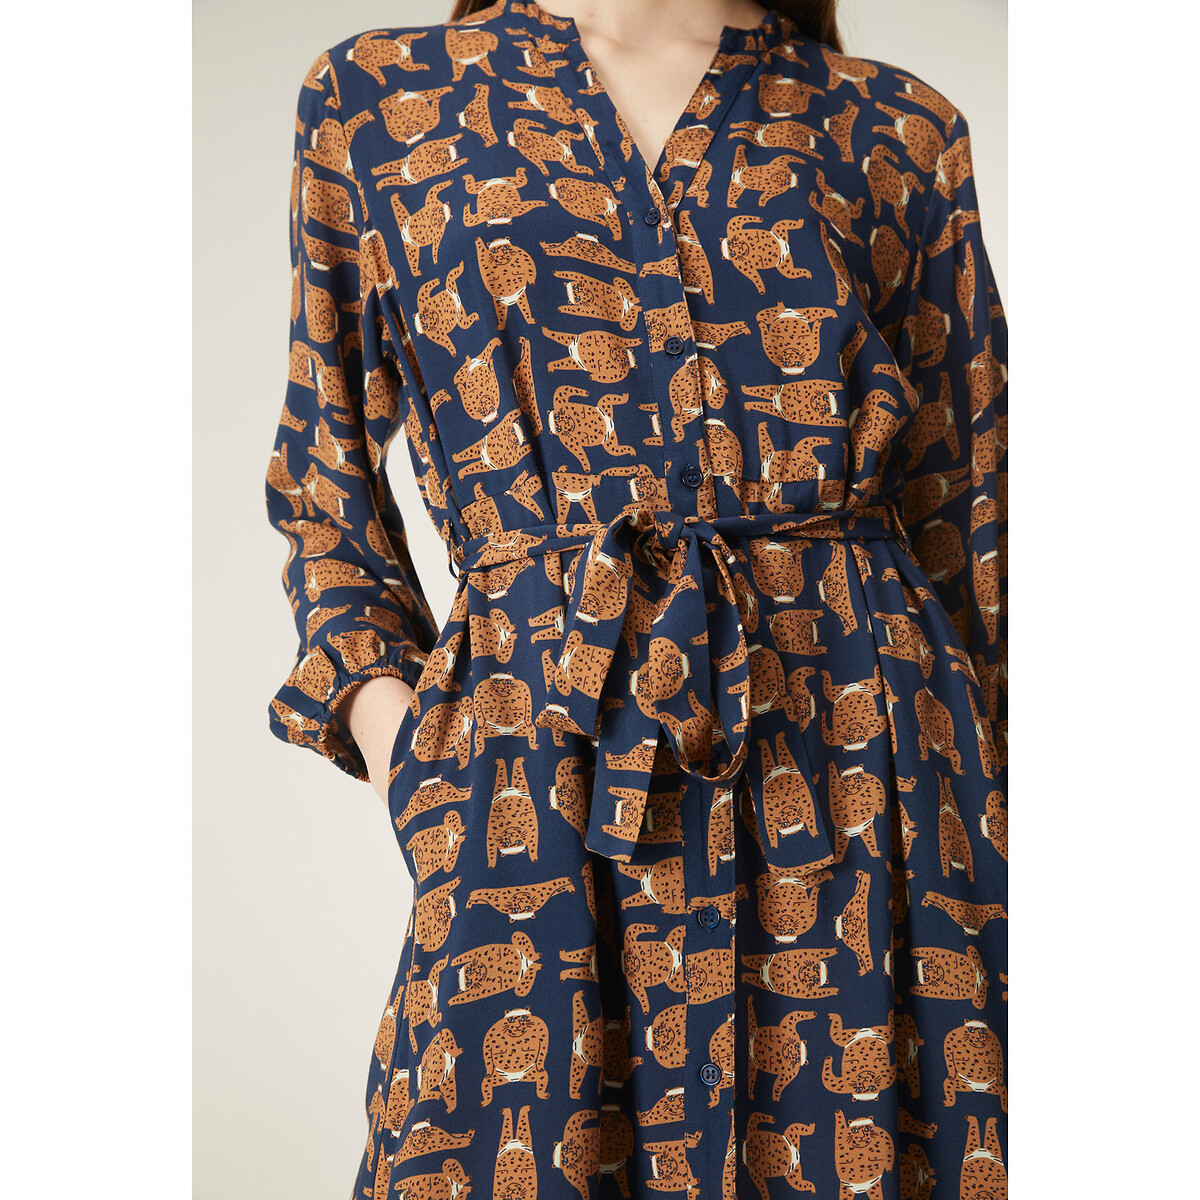 Платье Длинное с анималистичным принтом с ремешком L синий LaRedoute, размер L - фото 4